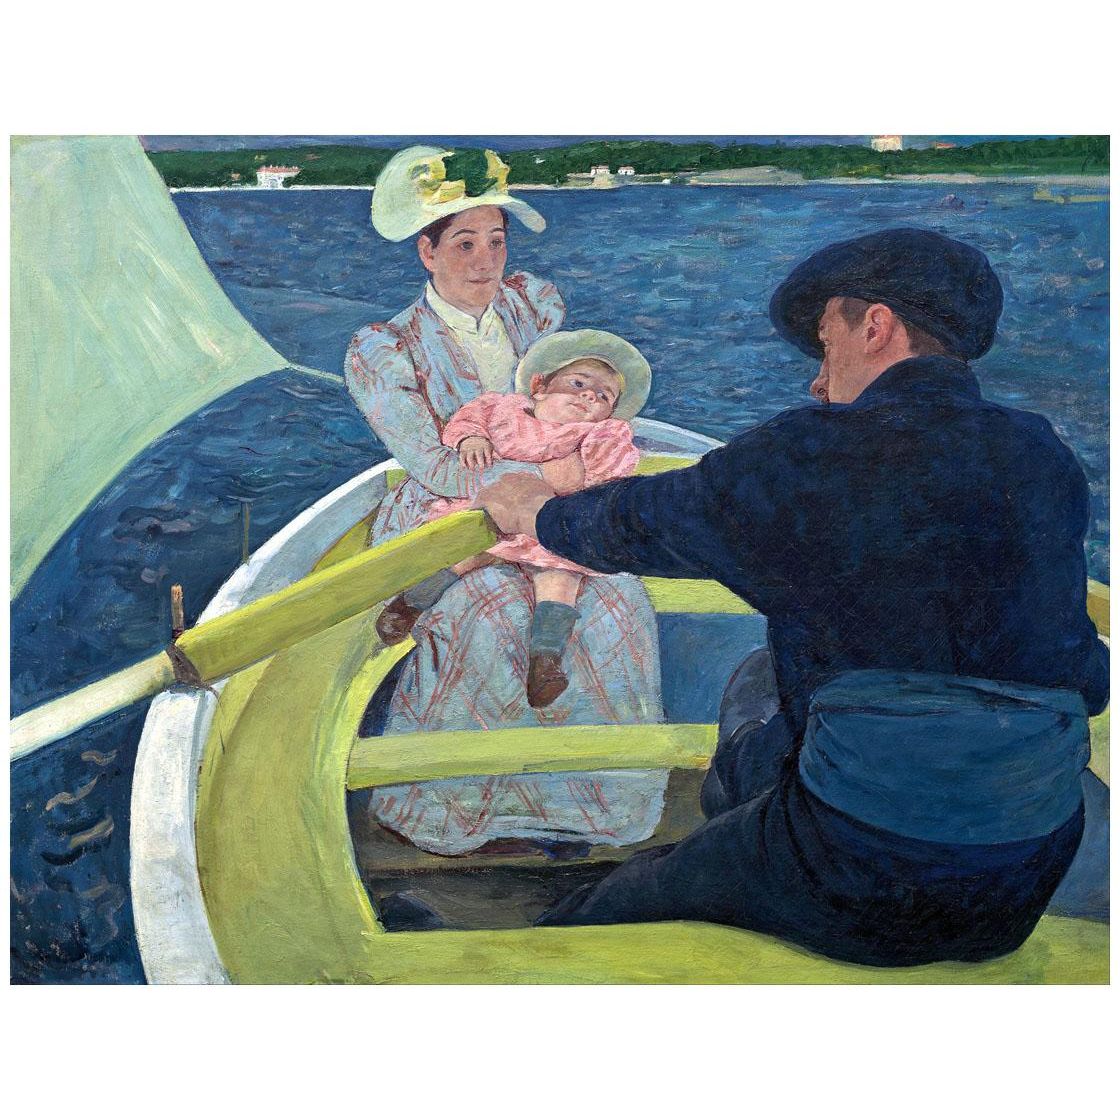 Mary Cassatt. The Boating Party. 1893-1894. National Gallery Washington